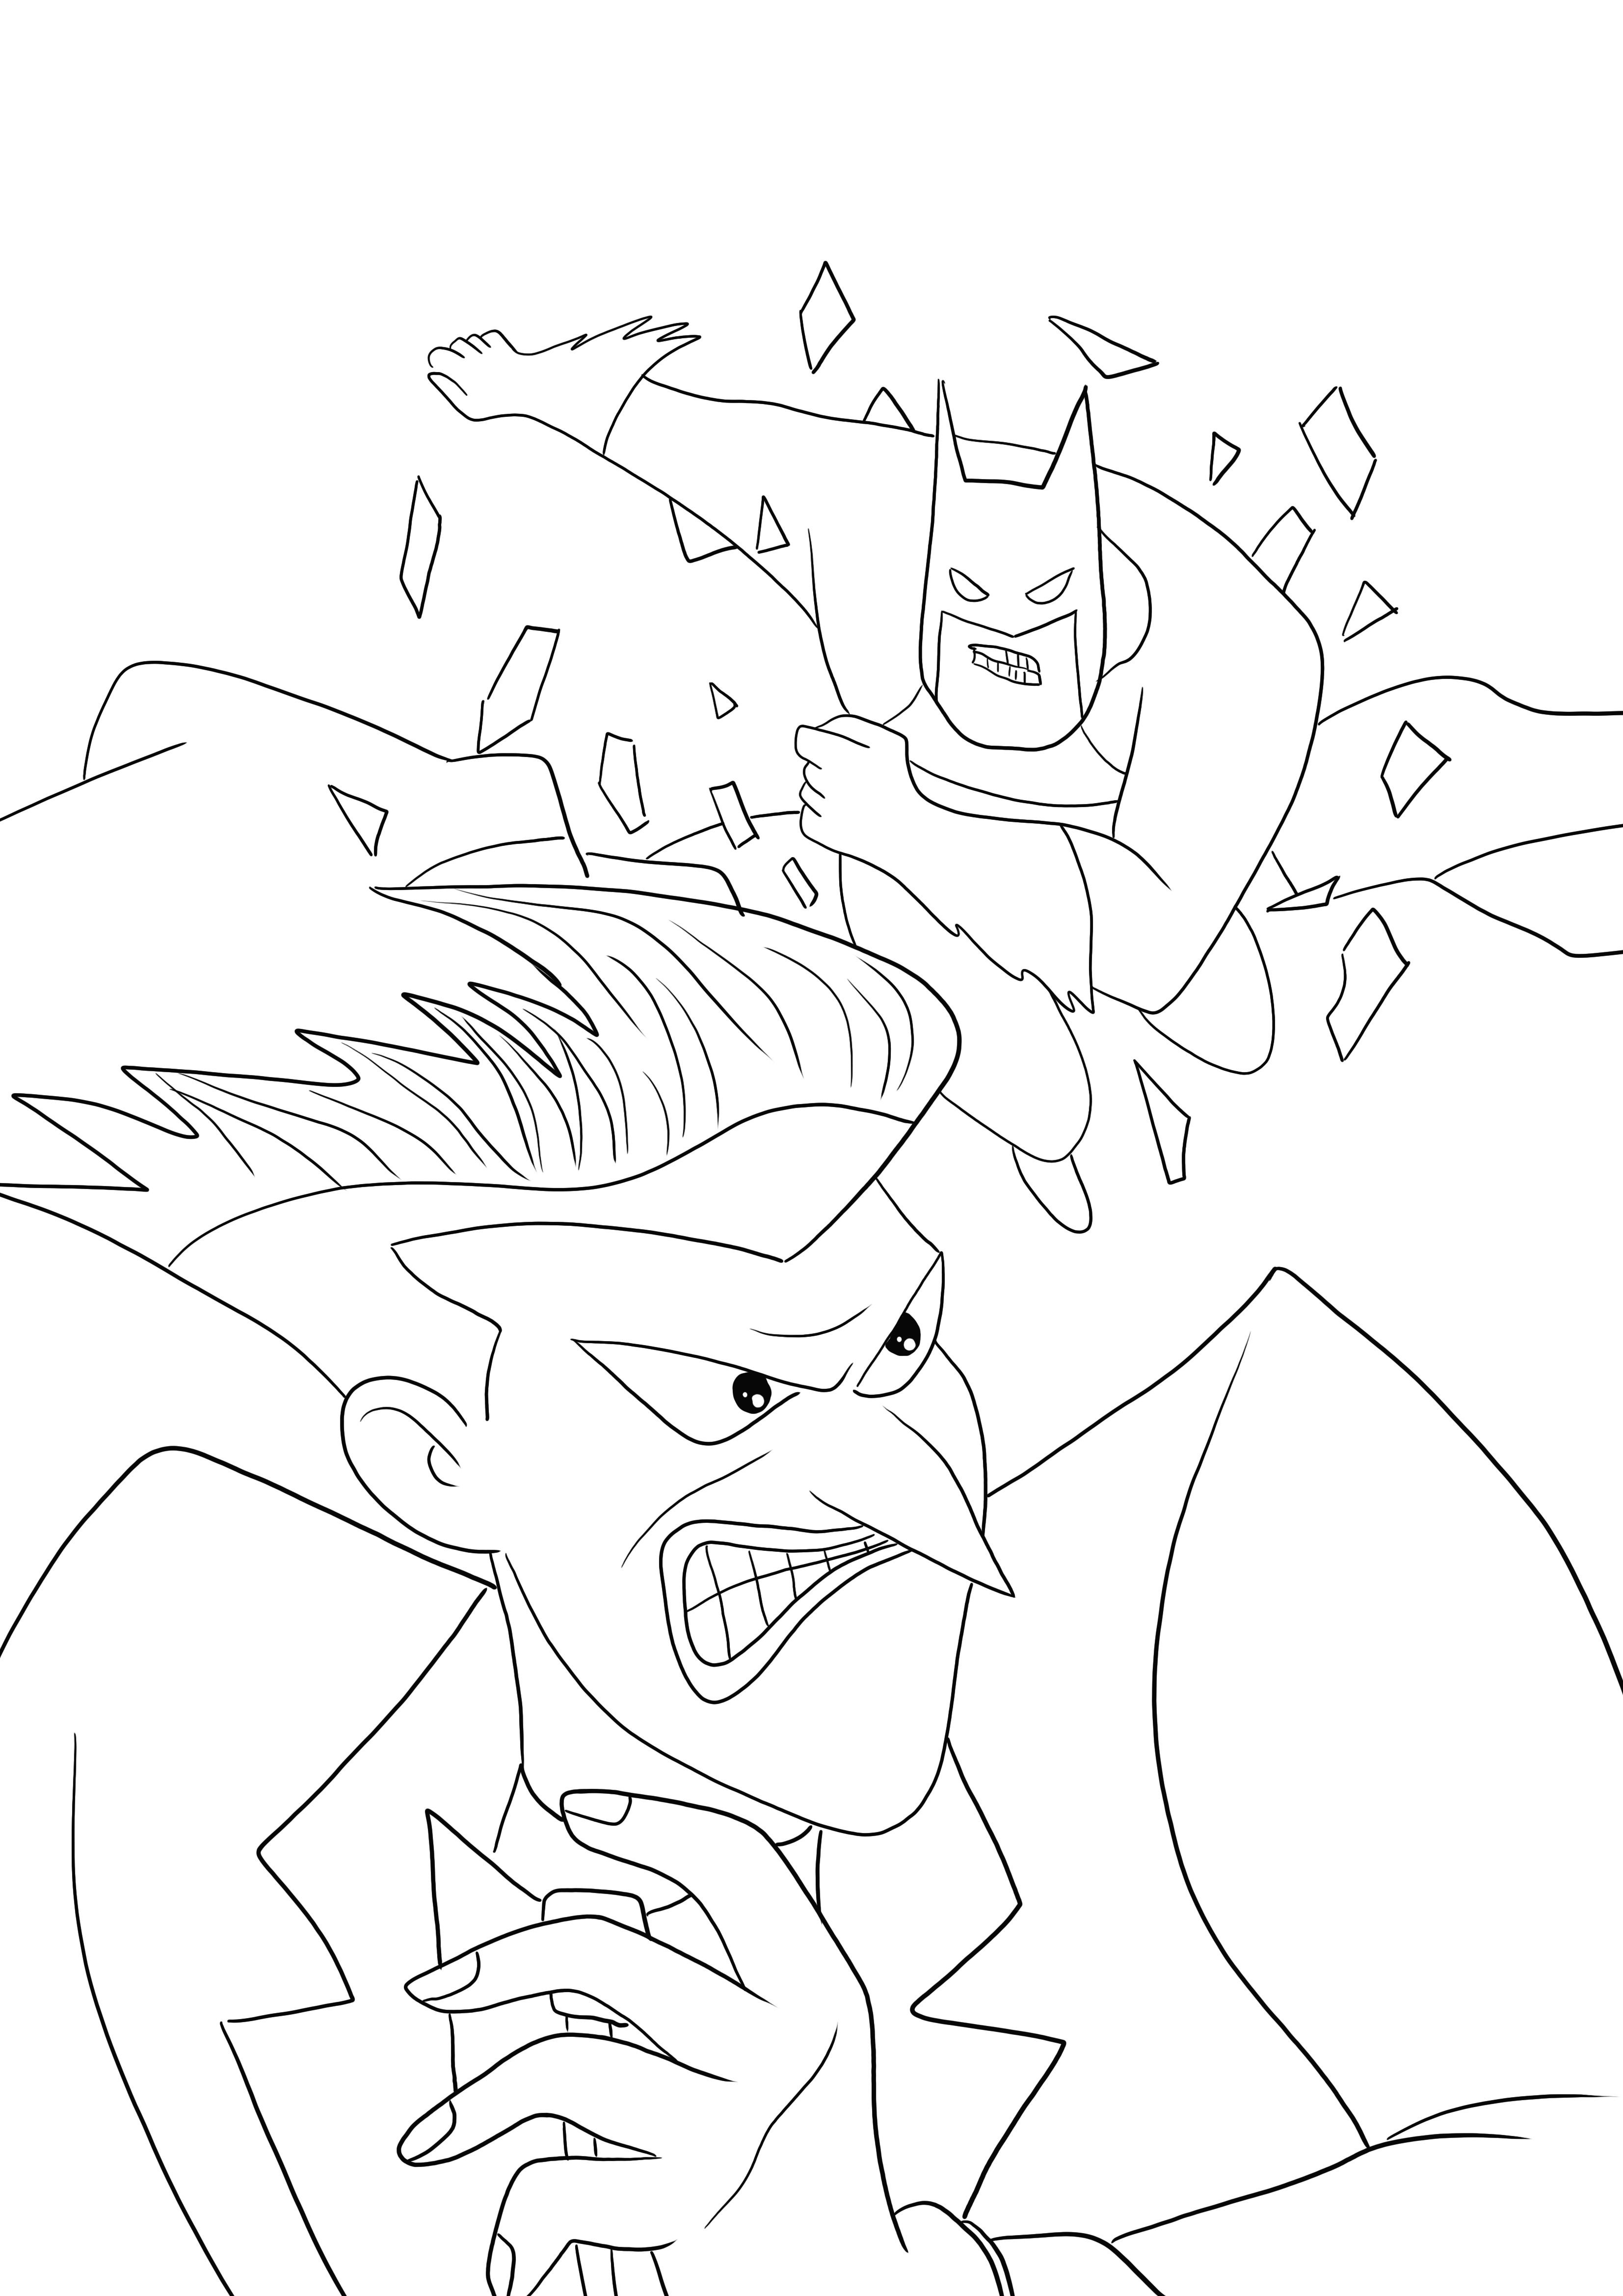 Batman ja Joker taistelevat tulostamisesta ja värittämisestä ilmaisista arkista